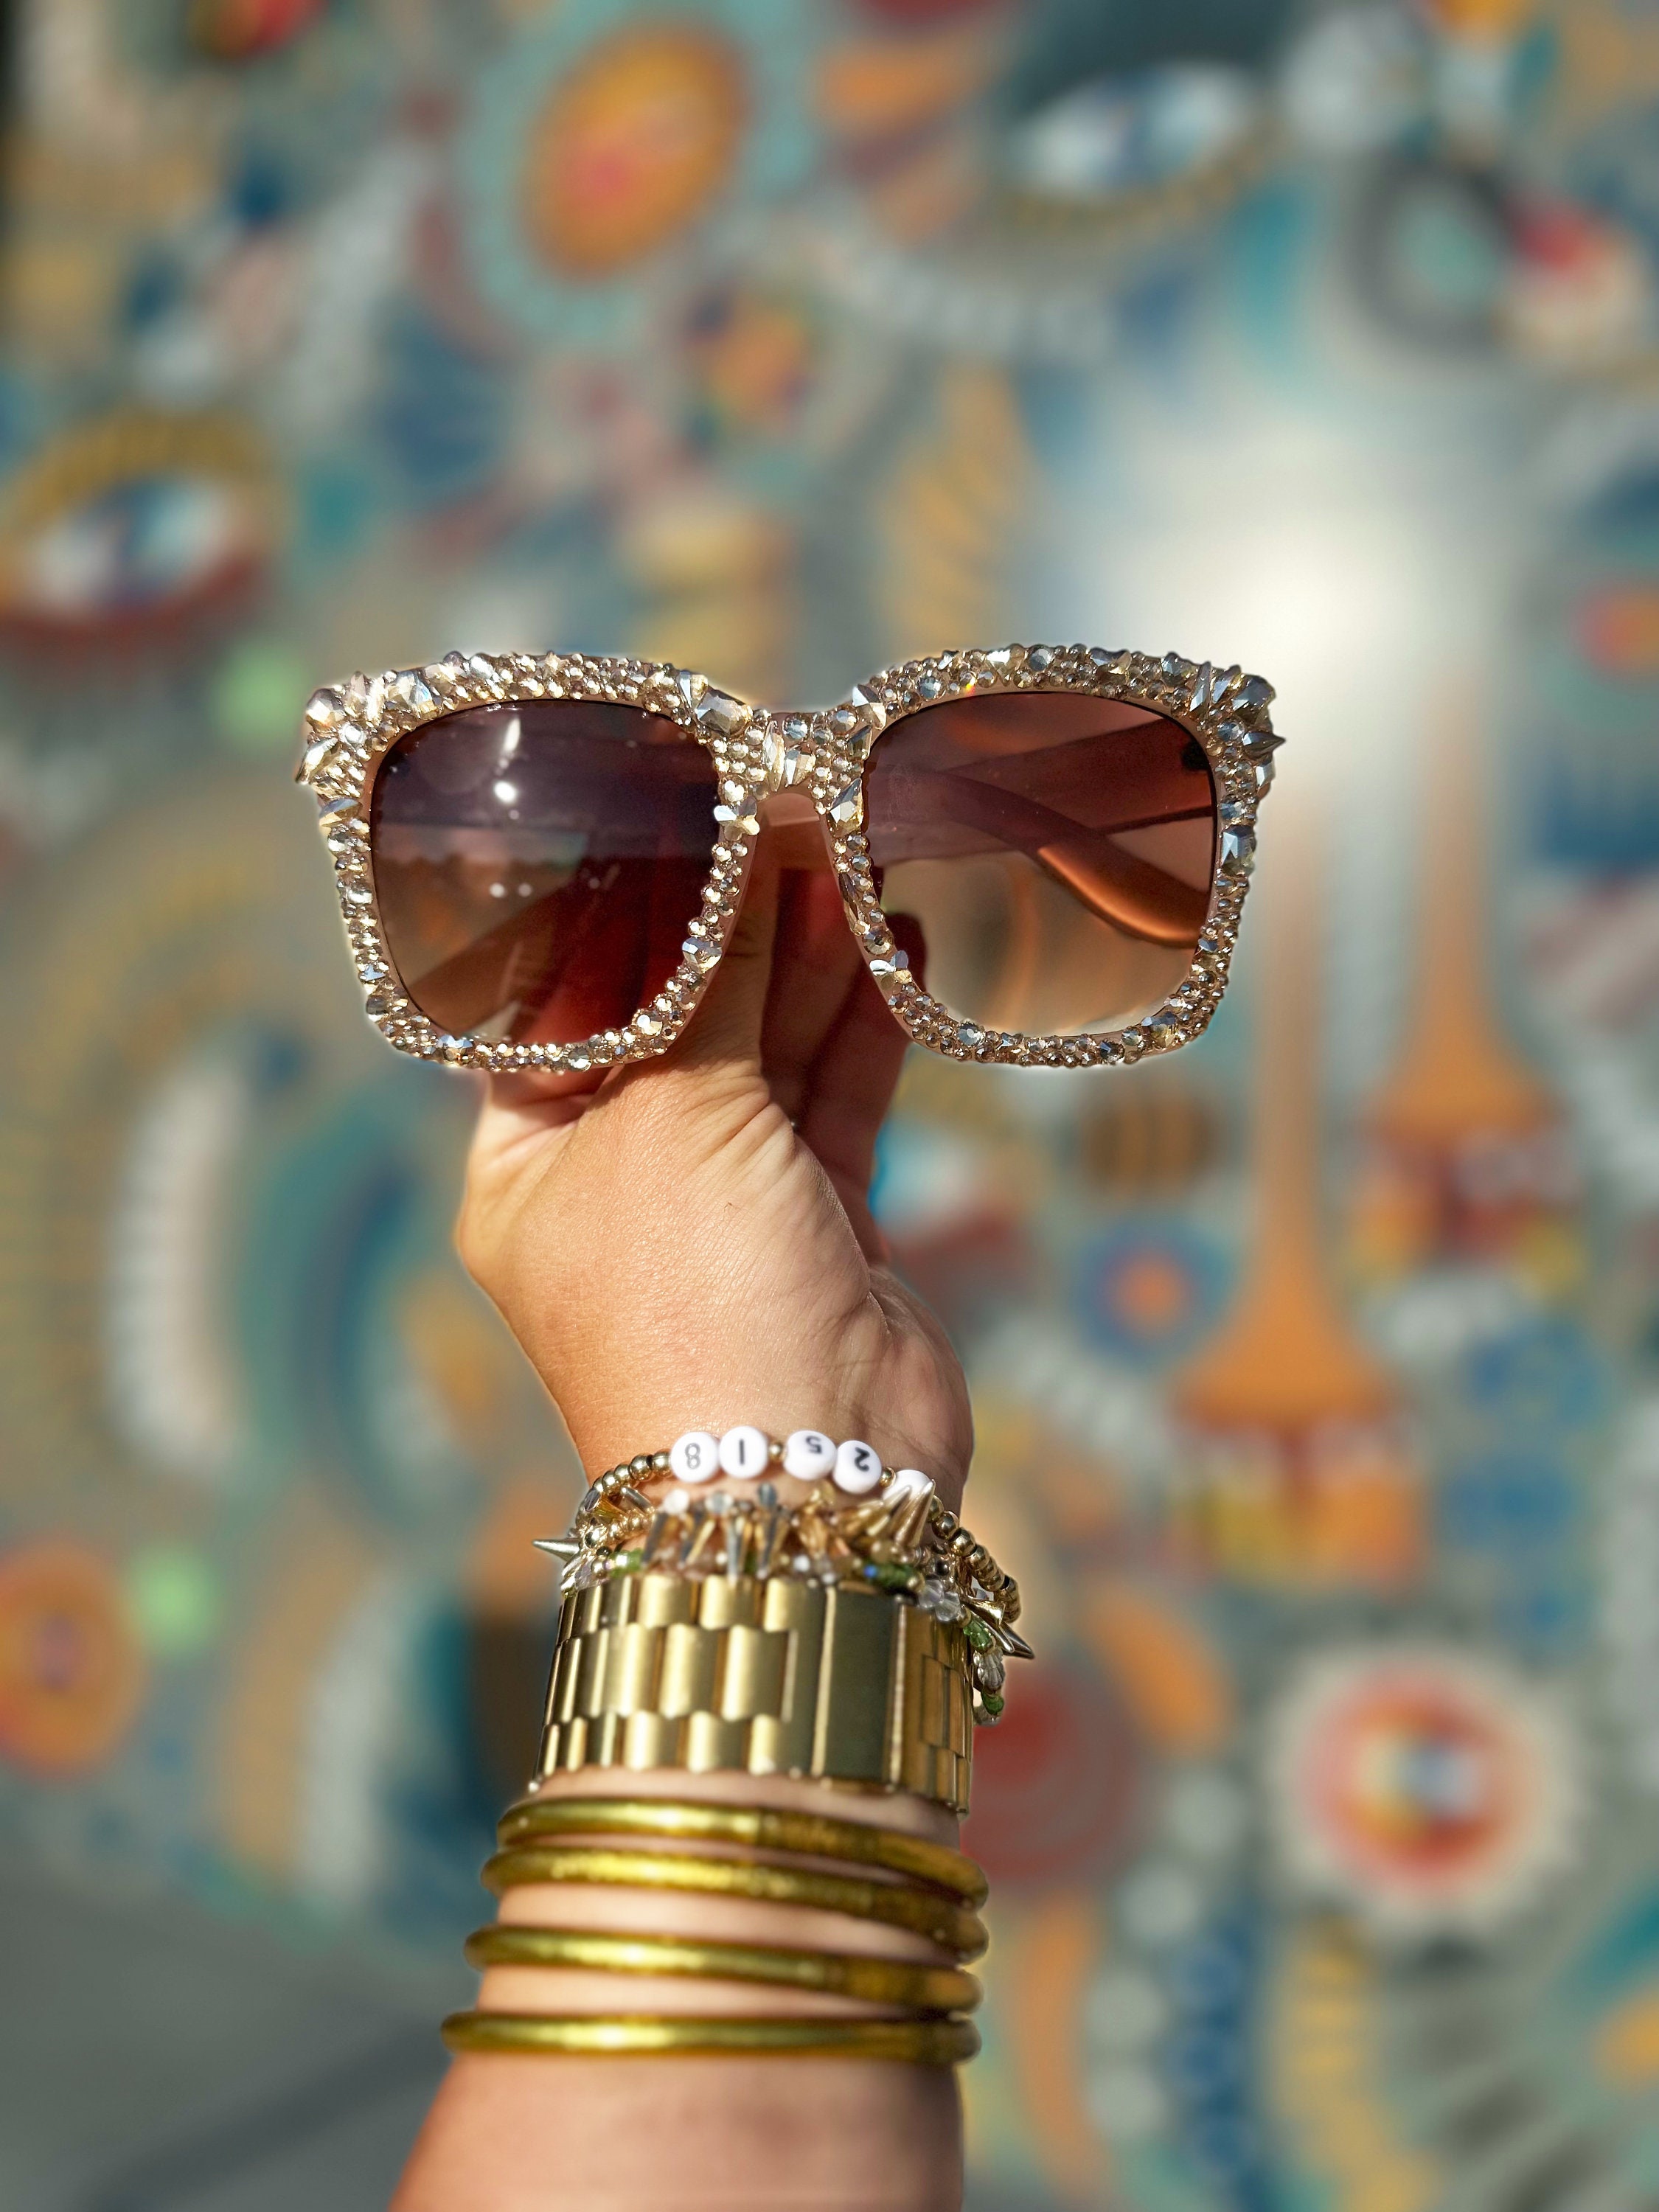 晨Rhinestone Glasses Fashion Transparent Square Sunglasses Fashion Sha, Silver with Crystal